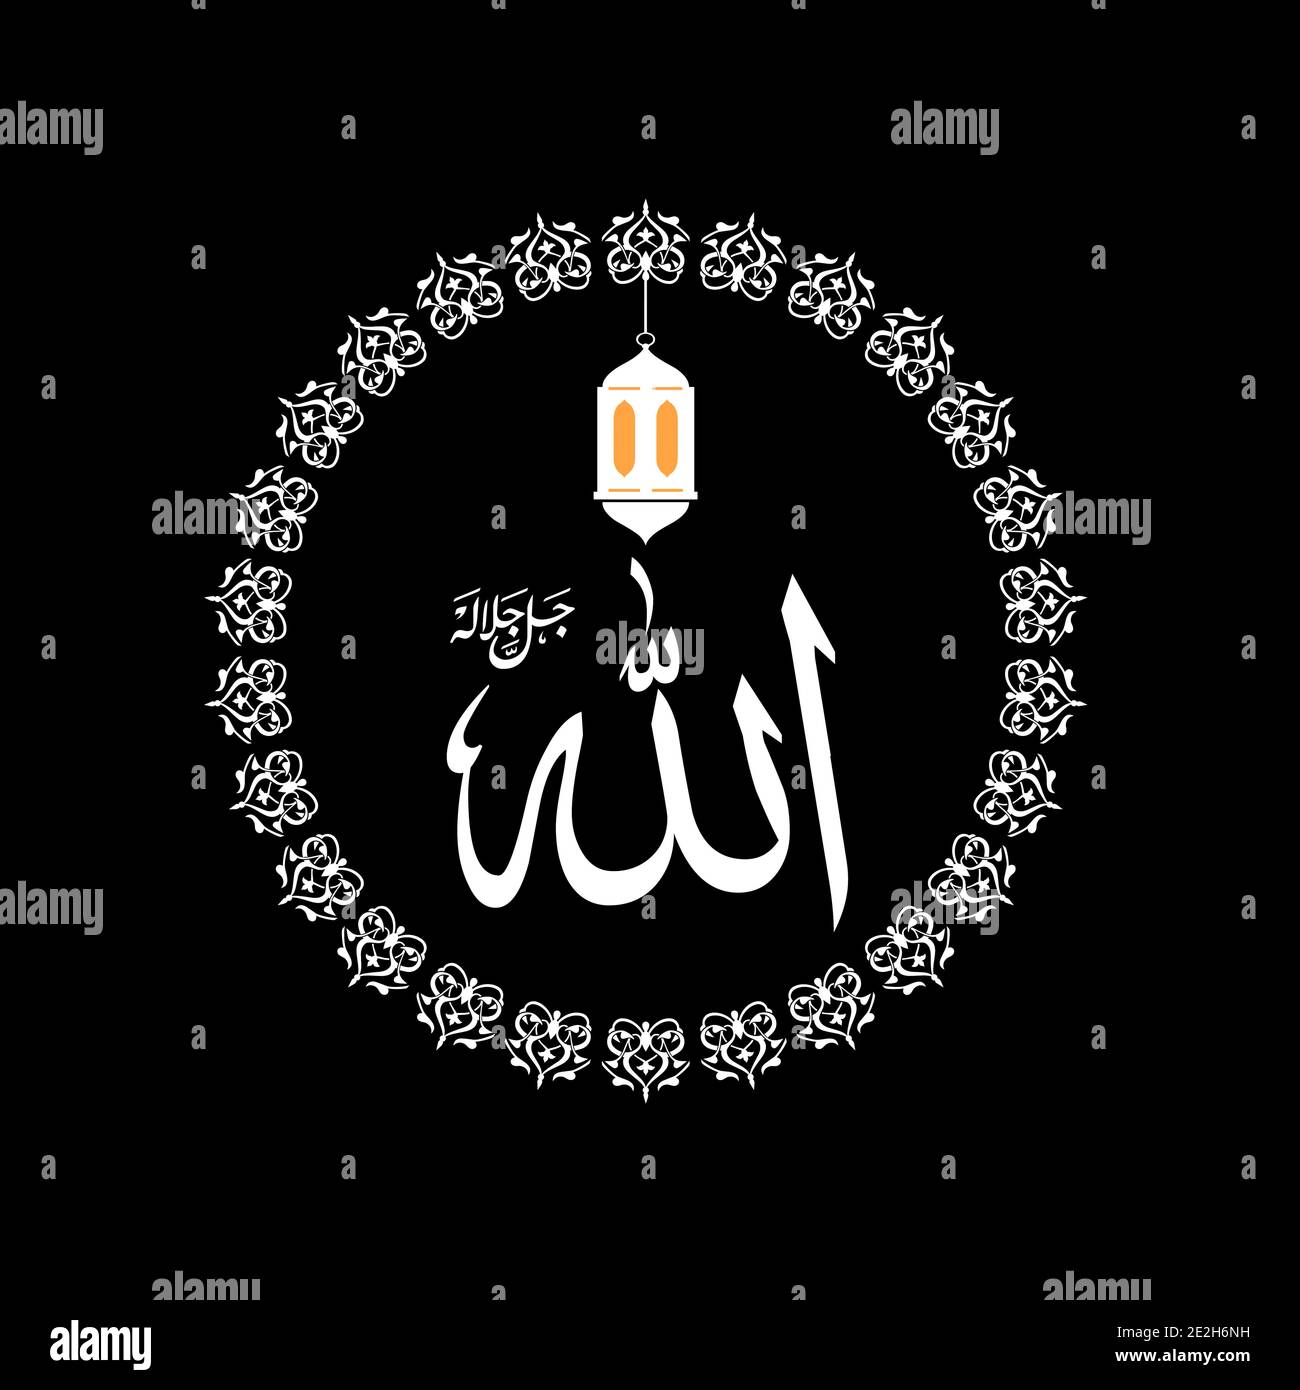 Bel nome Allah onnipotente nel disegno di illustrazione vettoriale. Illustrazione Vettoriale